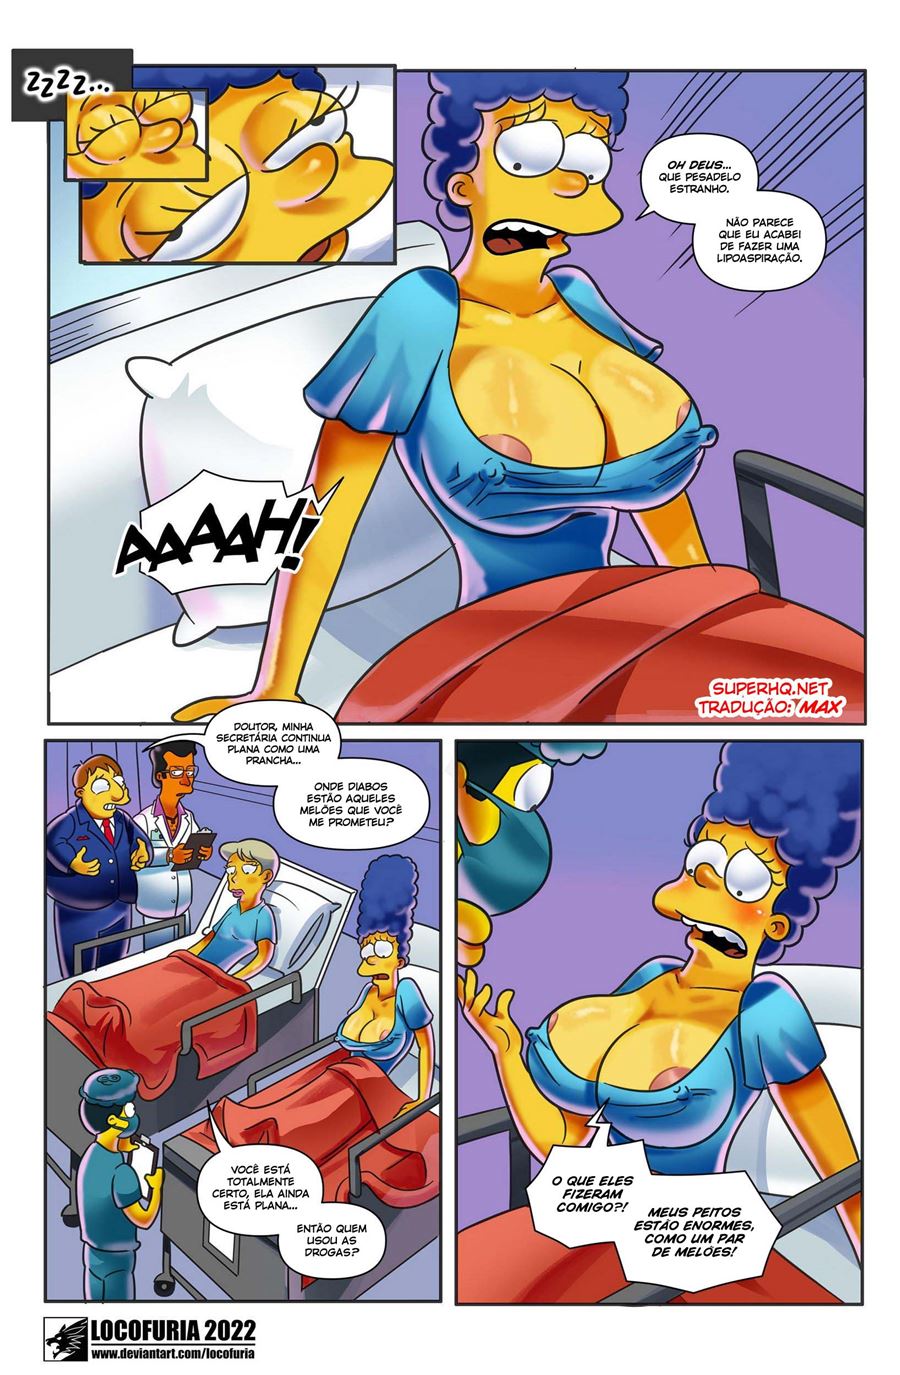 Os novos peitos de Marge